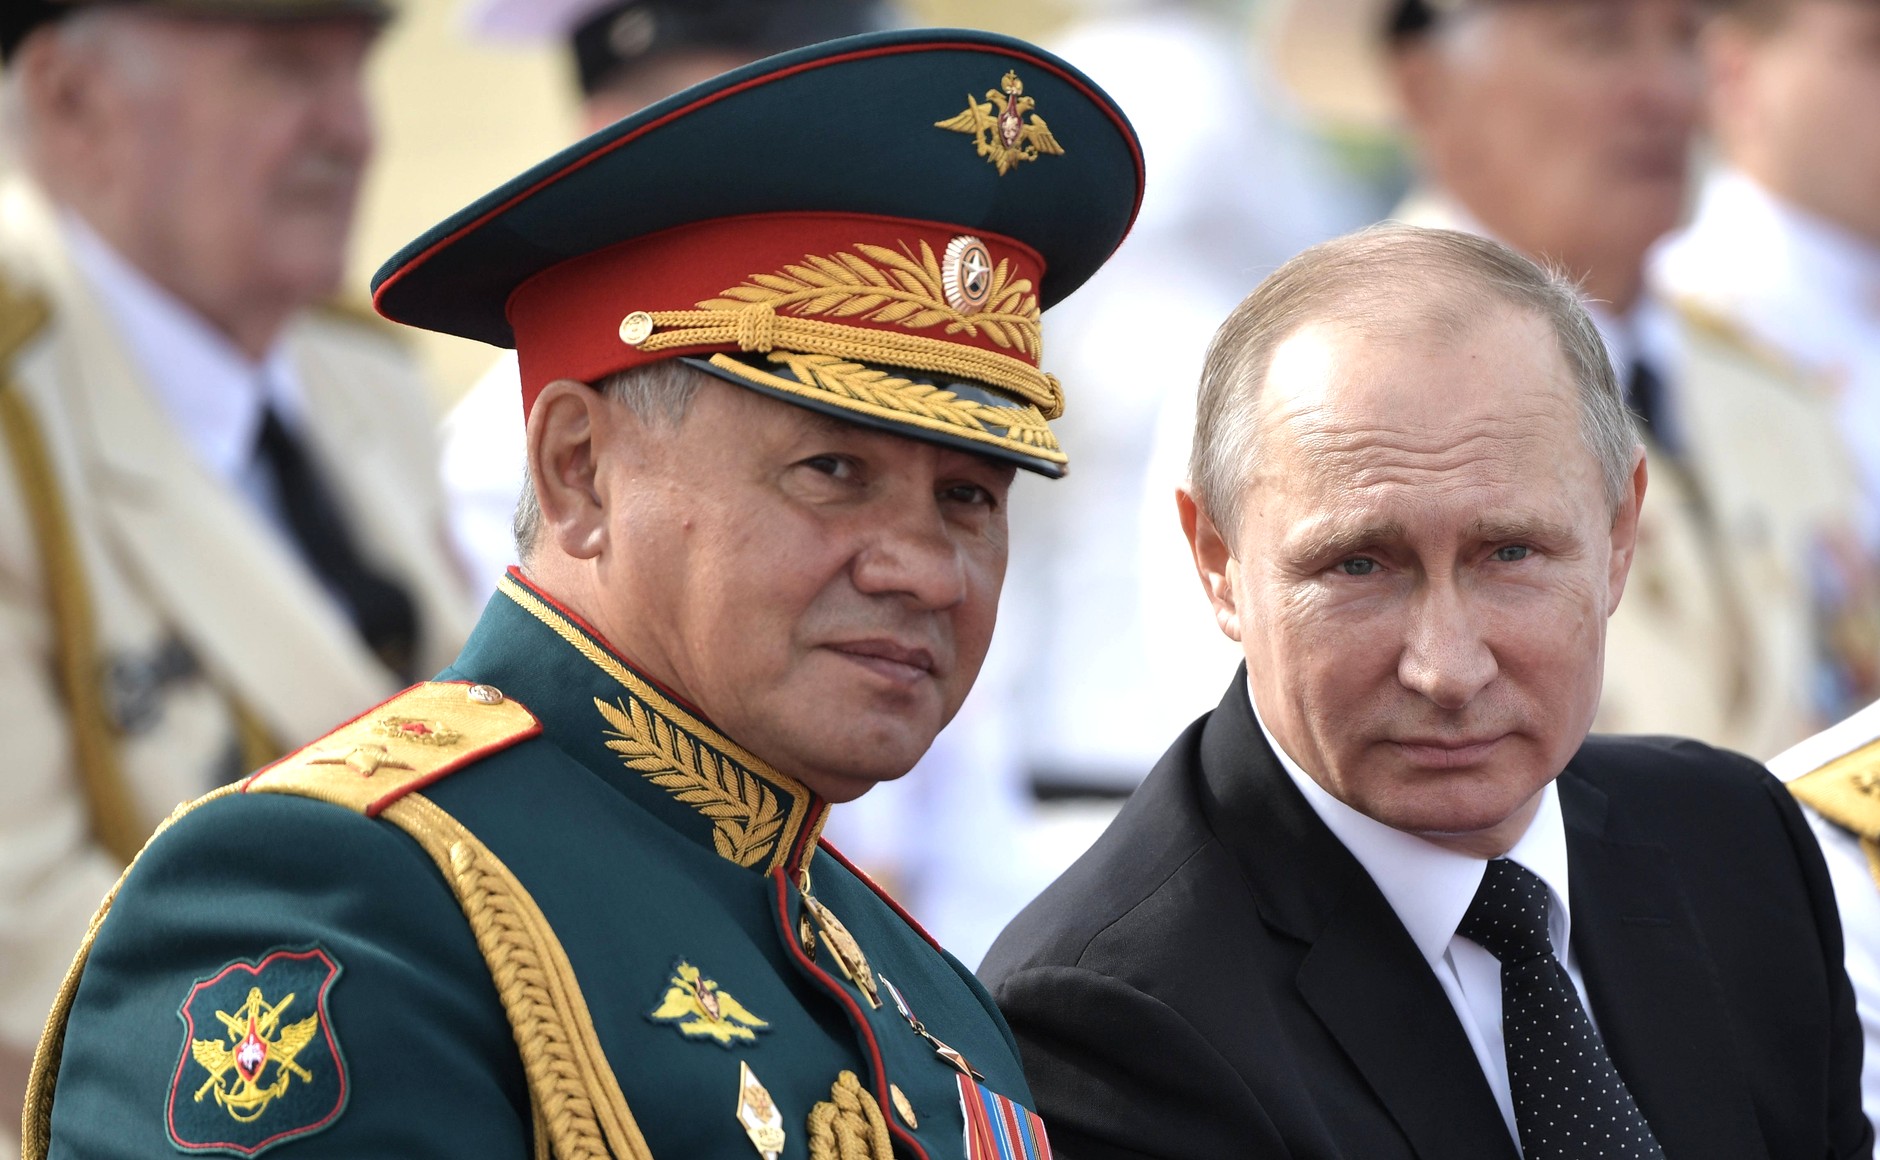 Ρωσία: Ο Πούτιν δίνει το δικαίωμα σε ξένους υπηκόους να υπηρετούν στις ένοπλες δυνάμεις